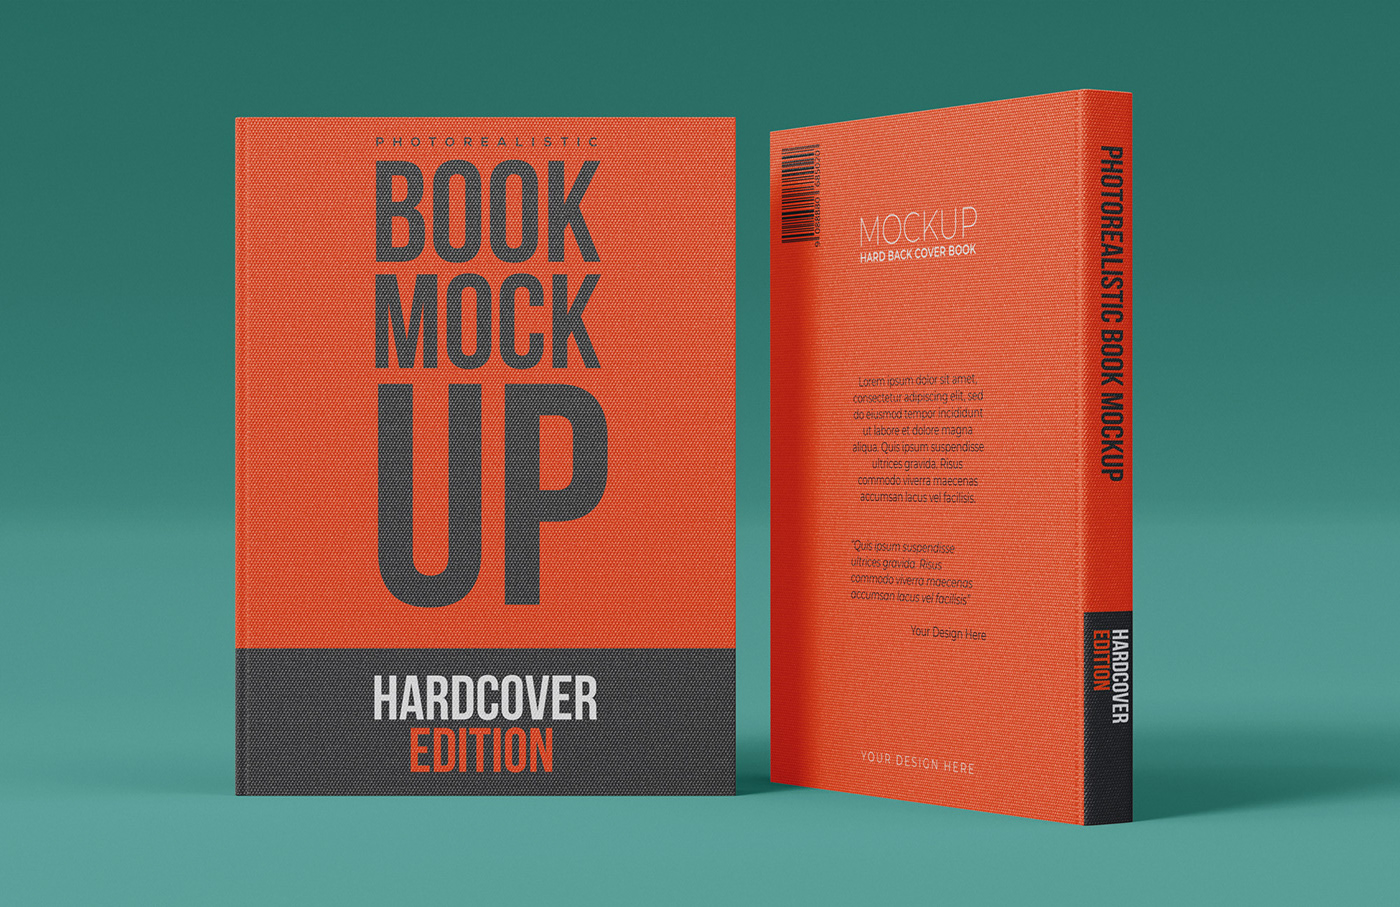 book mockup hardcover book mockup Mockup mockup psd mockups psd mockup standing book mockup free book